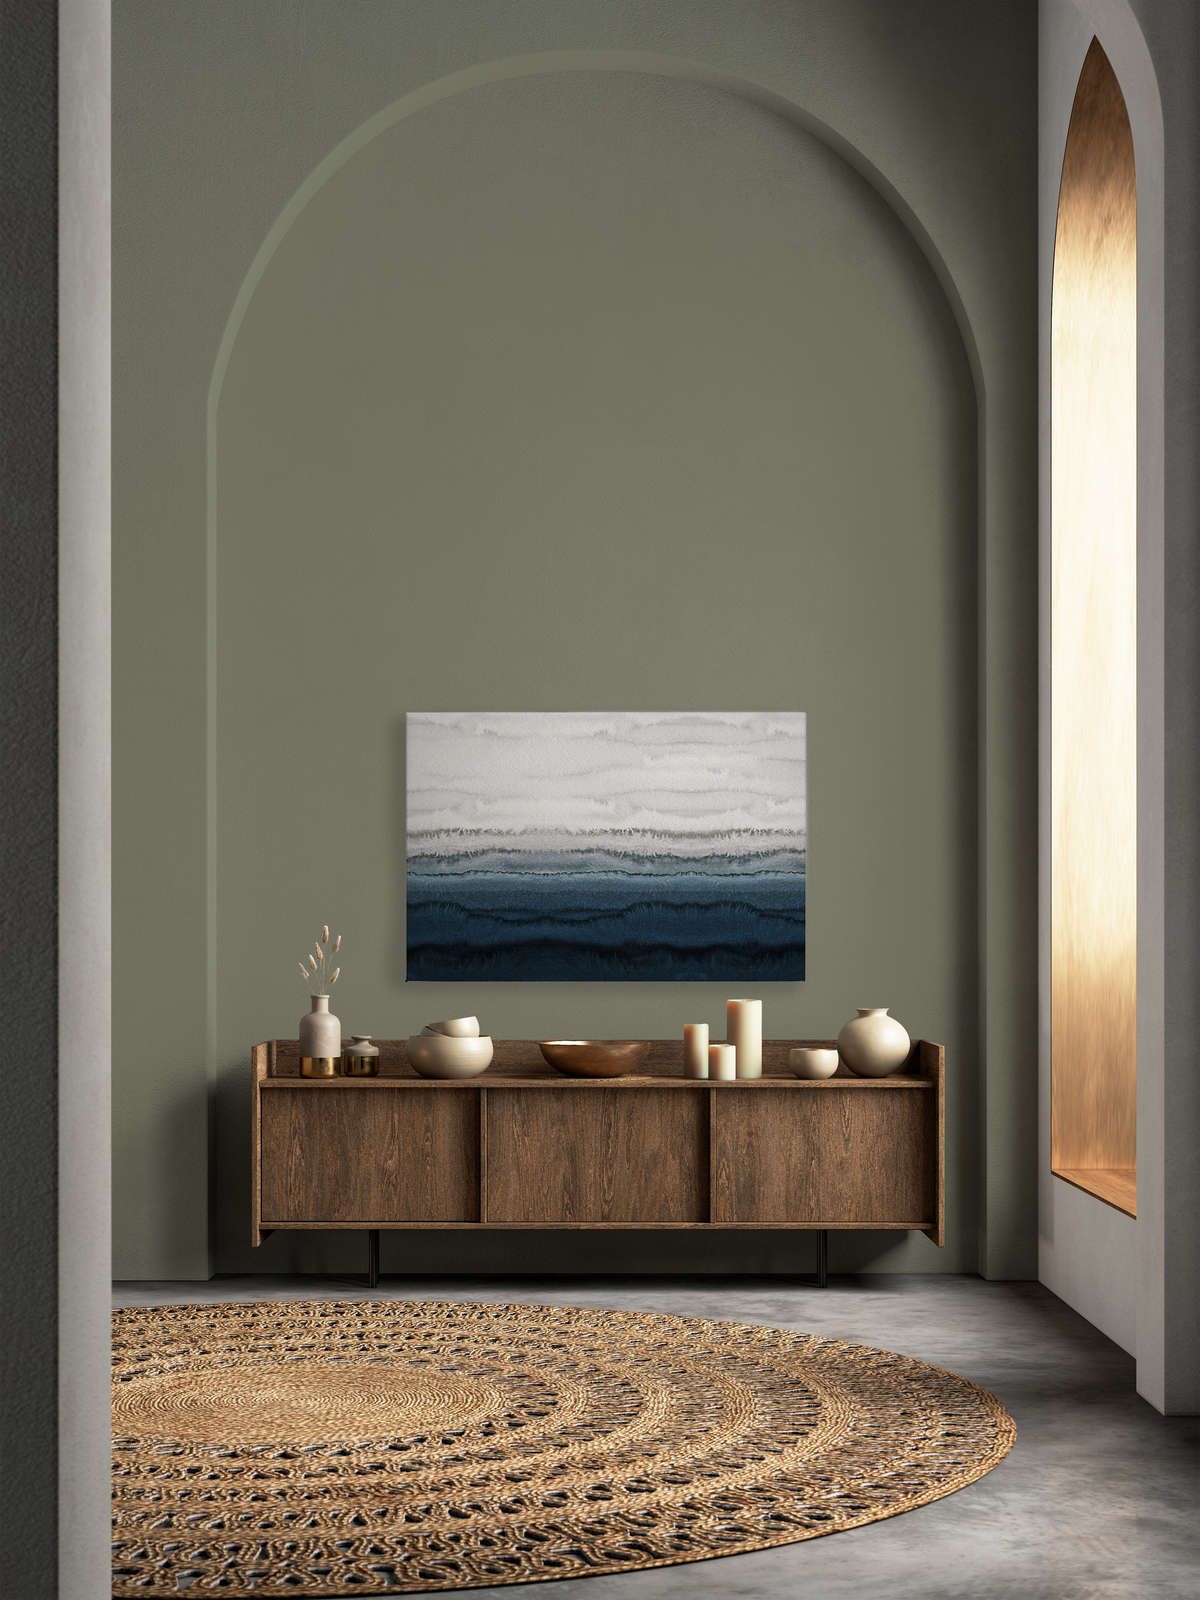             Leinwandbild Gezeiten im minimalistischen Aquarell Stil – 1,20 m x 0,80 m
        